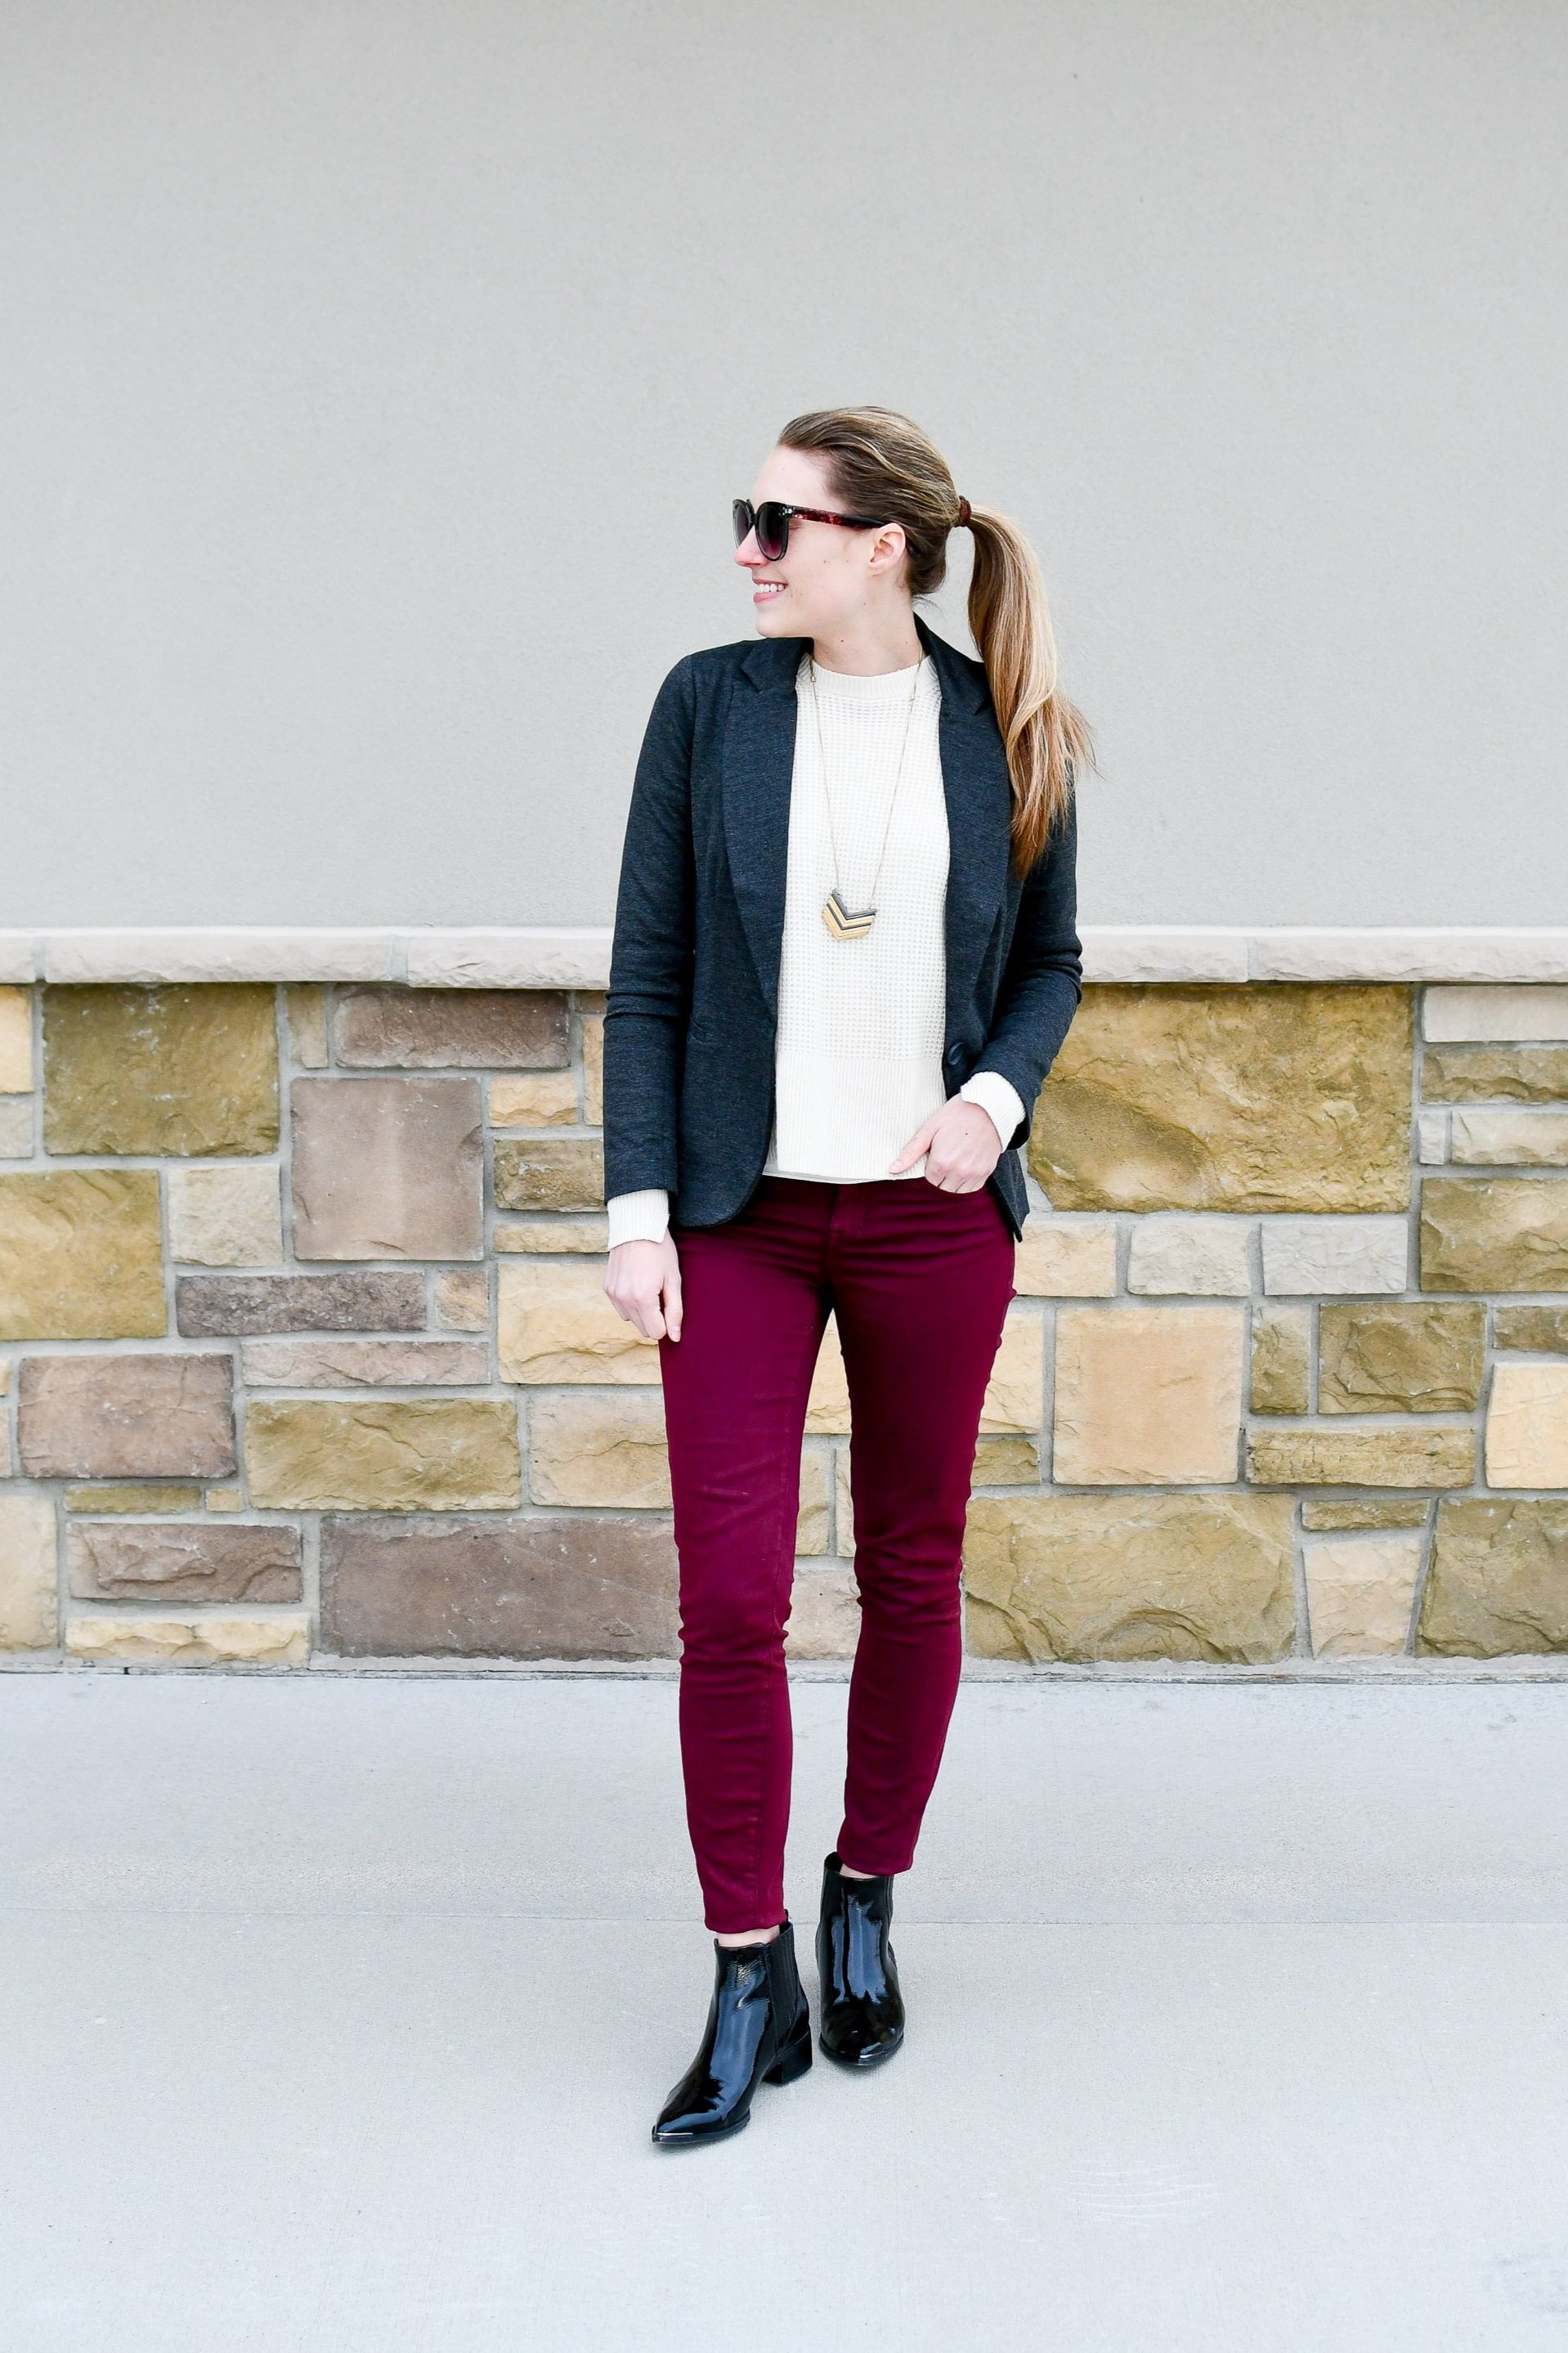 Grad School Interview Outfit Idea: Knit Blazer + Colorful Pants + Boss Boots | Cotton Cashmere Cat Hair